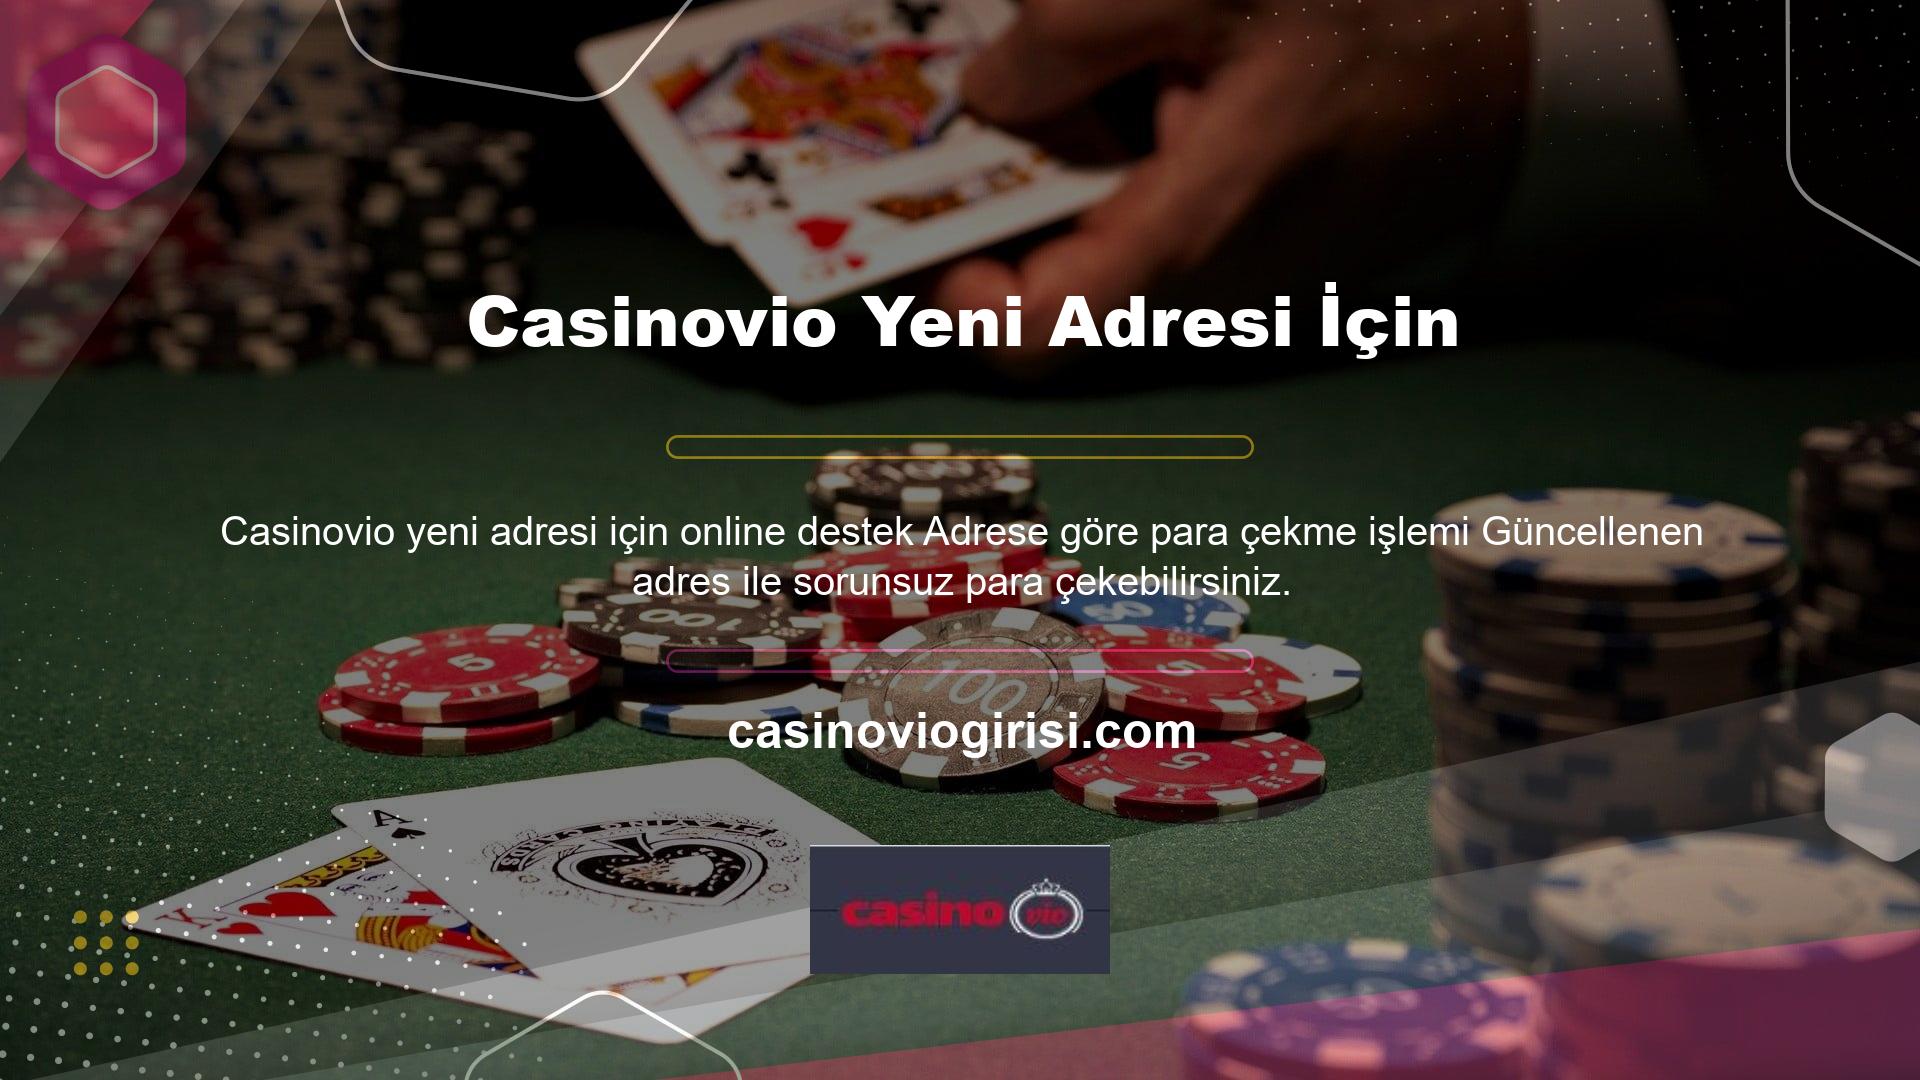 Casinovio, kullanıcılara ihtiyaç duydukları bilgileri kolayca çıkarma seçenekleri sunar